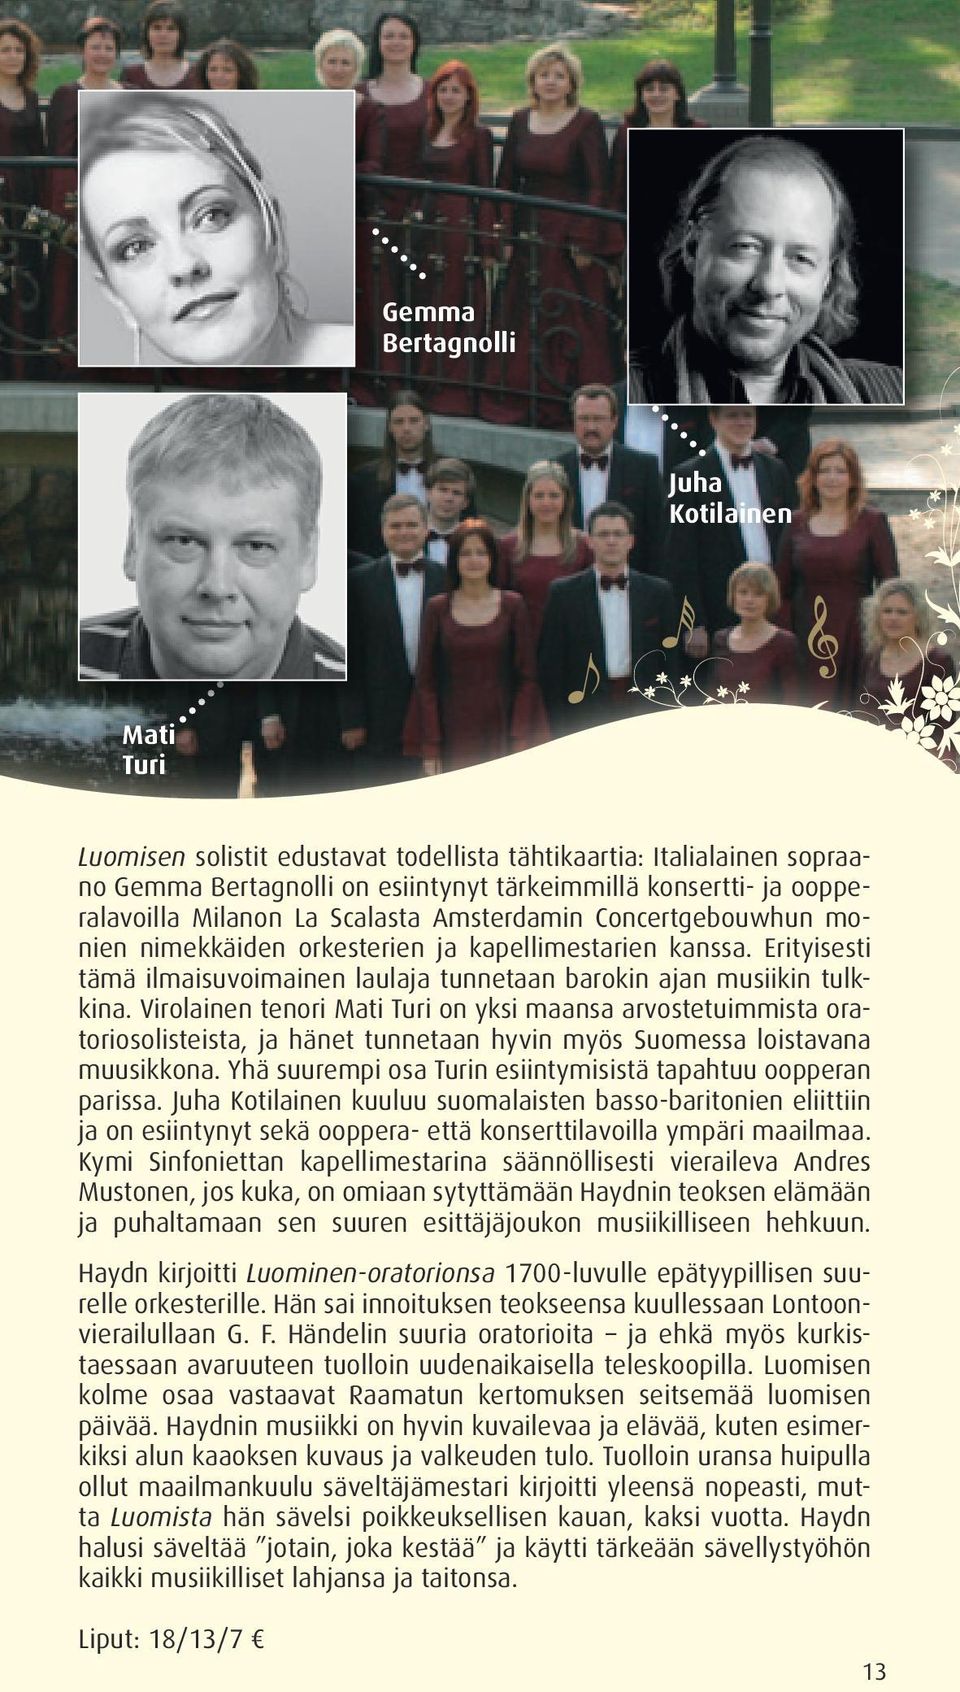 Virolainen tenori Mati Turi on yksi maansa arvostetuimmista oratoriosolisteista, ja hänet tunnetaan hyvin myös Suomessa loistavana muusikkona.